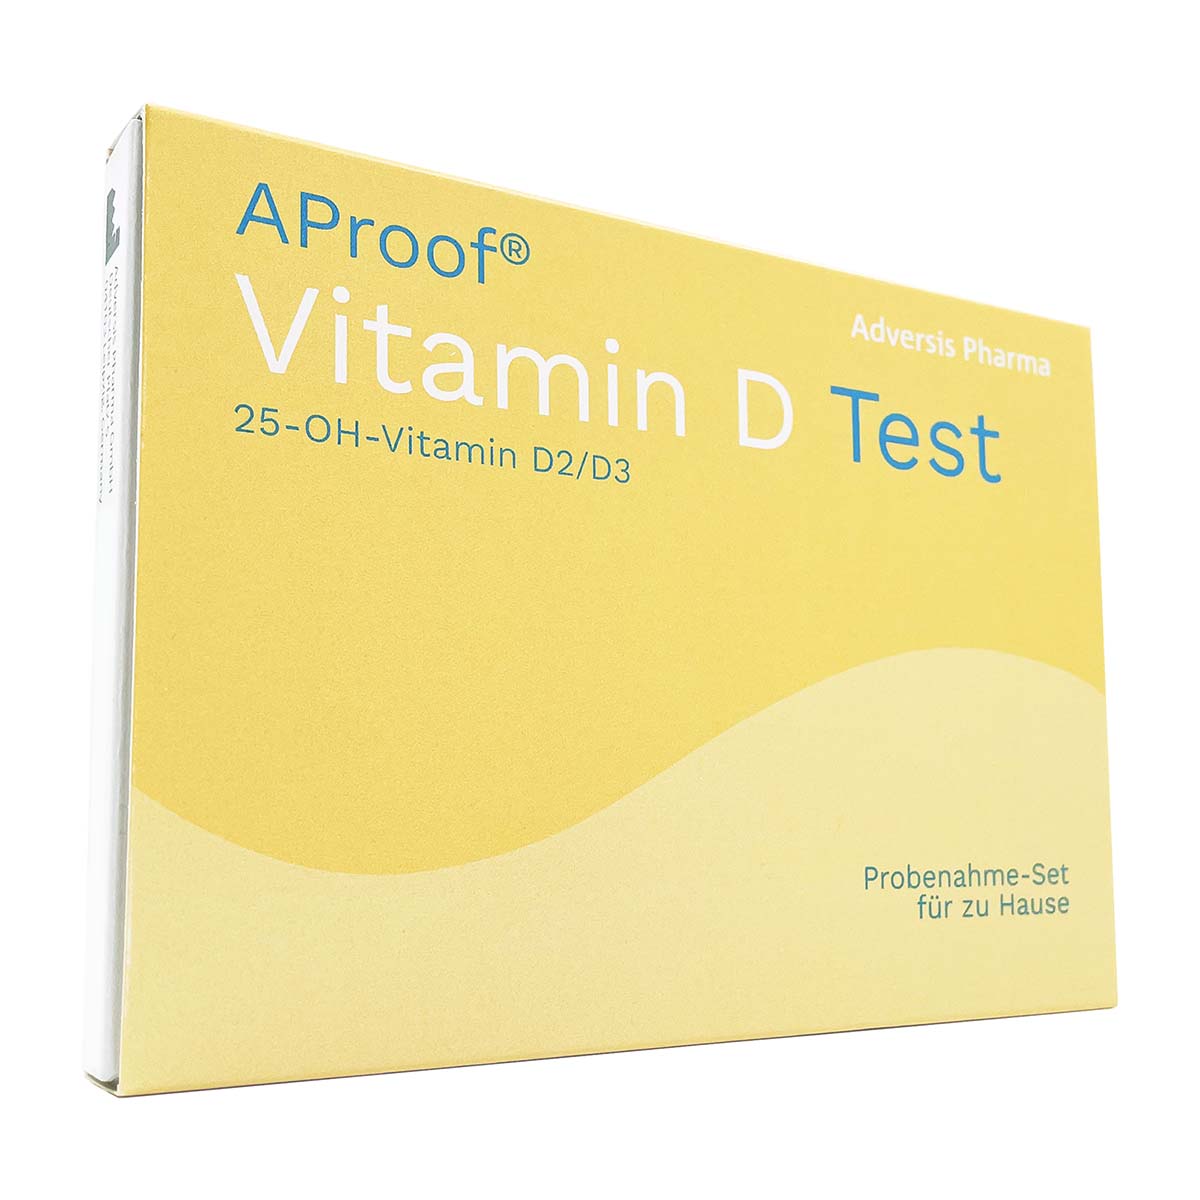 AProof® Vitamin D Test - jetzt Vitamin D Spiegel messen